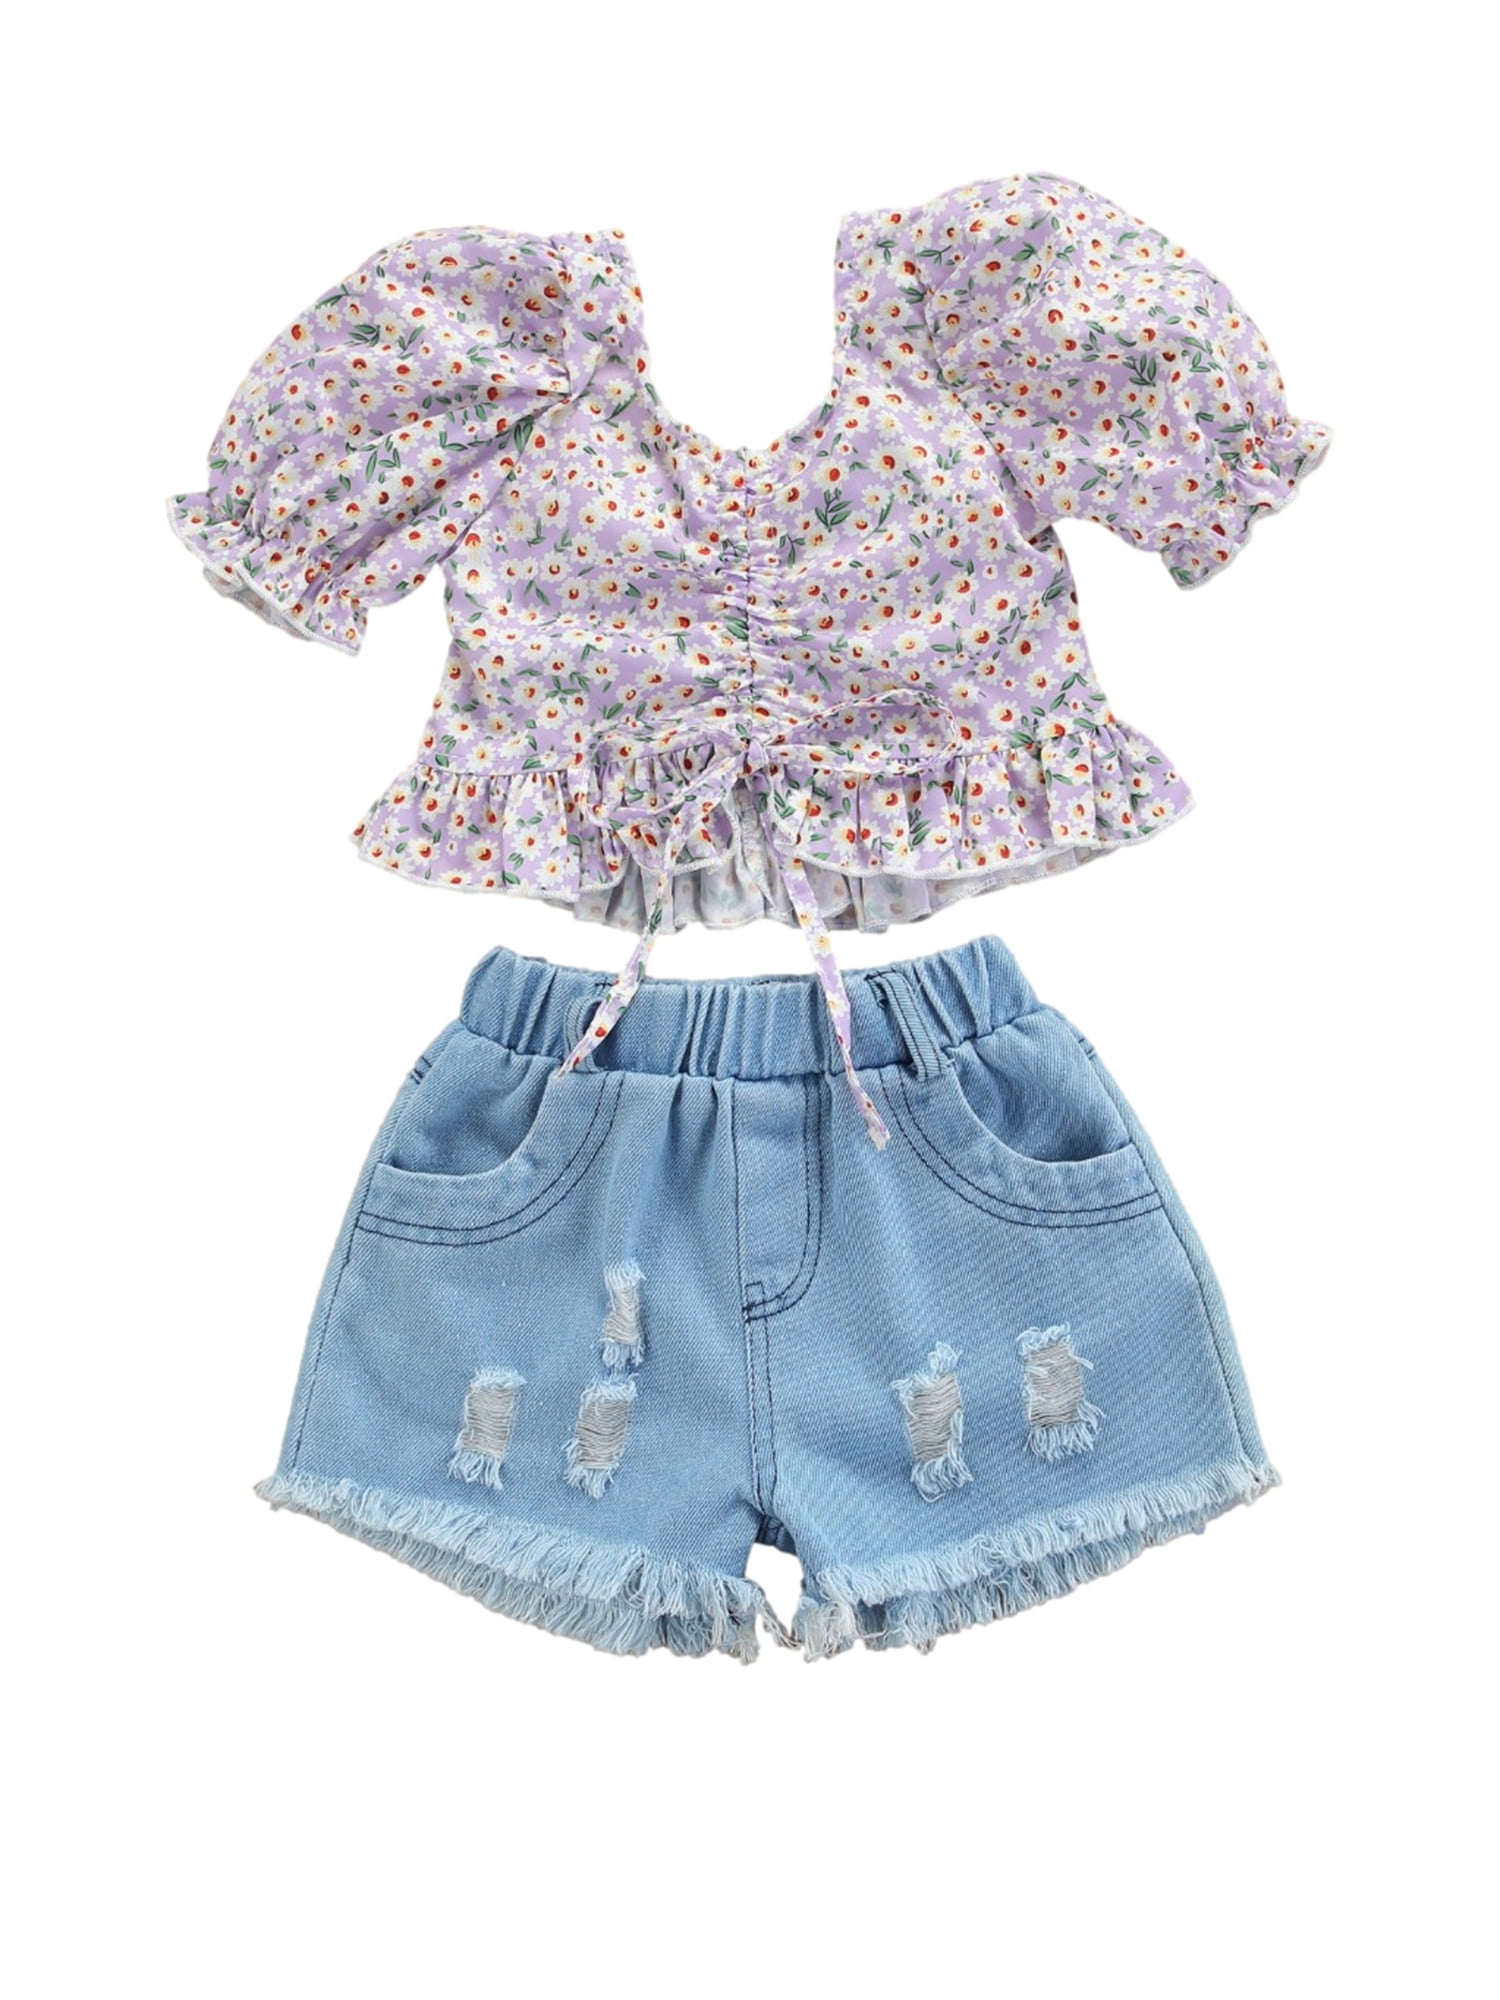 TIBE PINCESS Girls Denim Shorts 2 Layers Ruffles Lace Kids Baby Workout Skirt Shorts